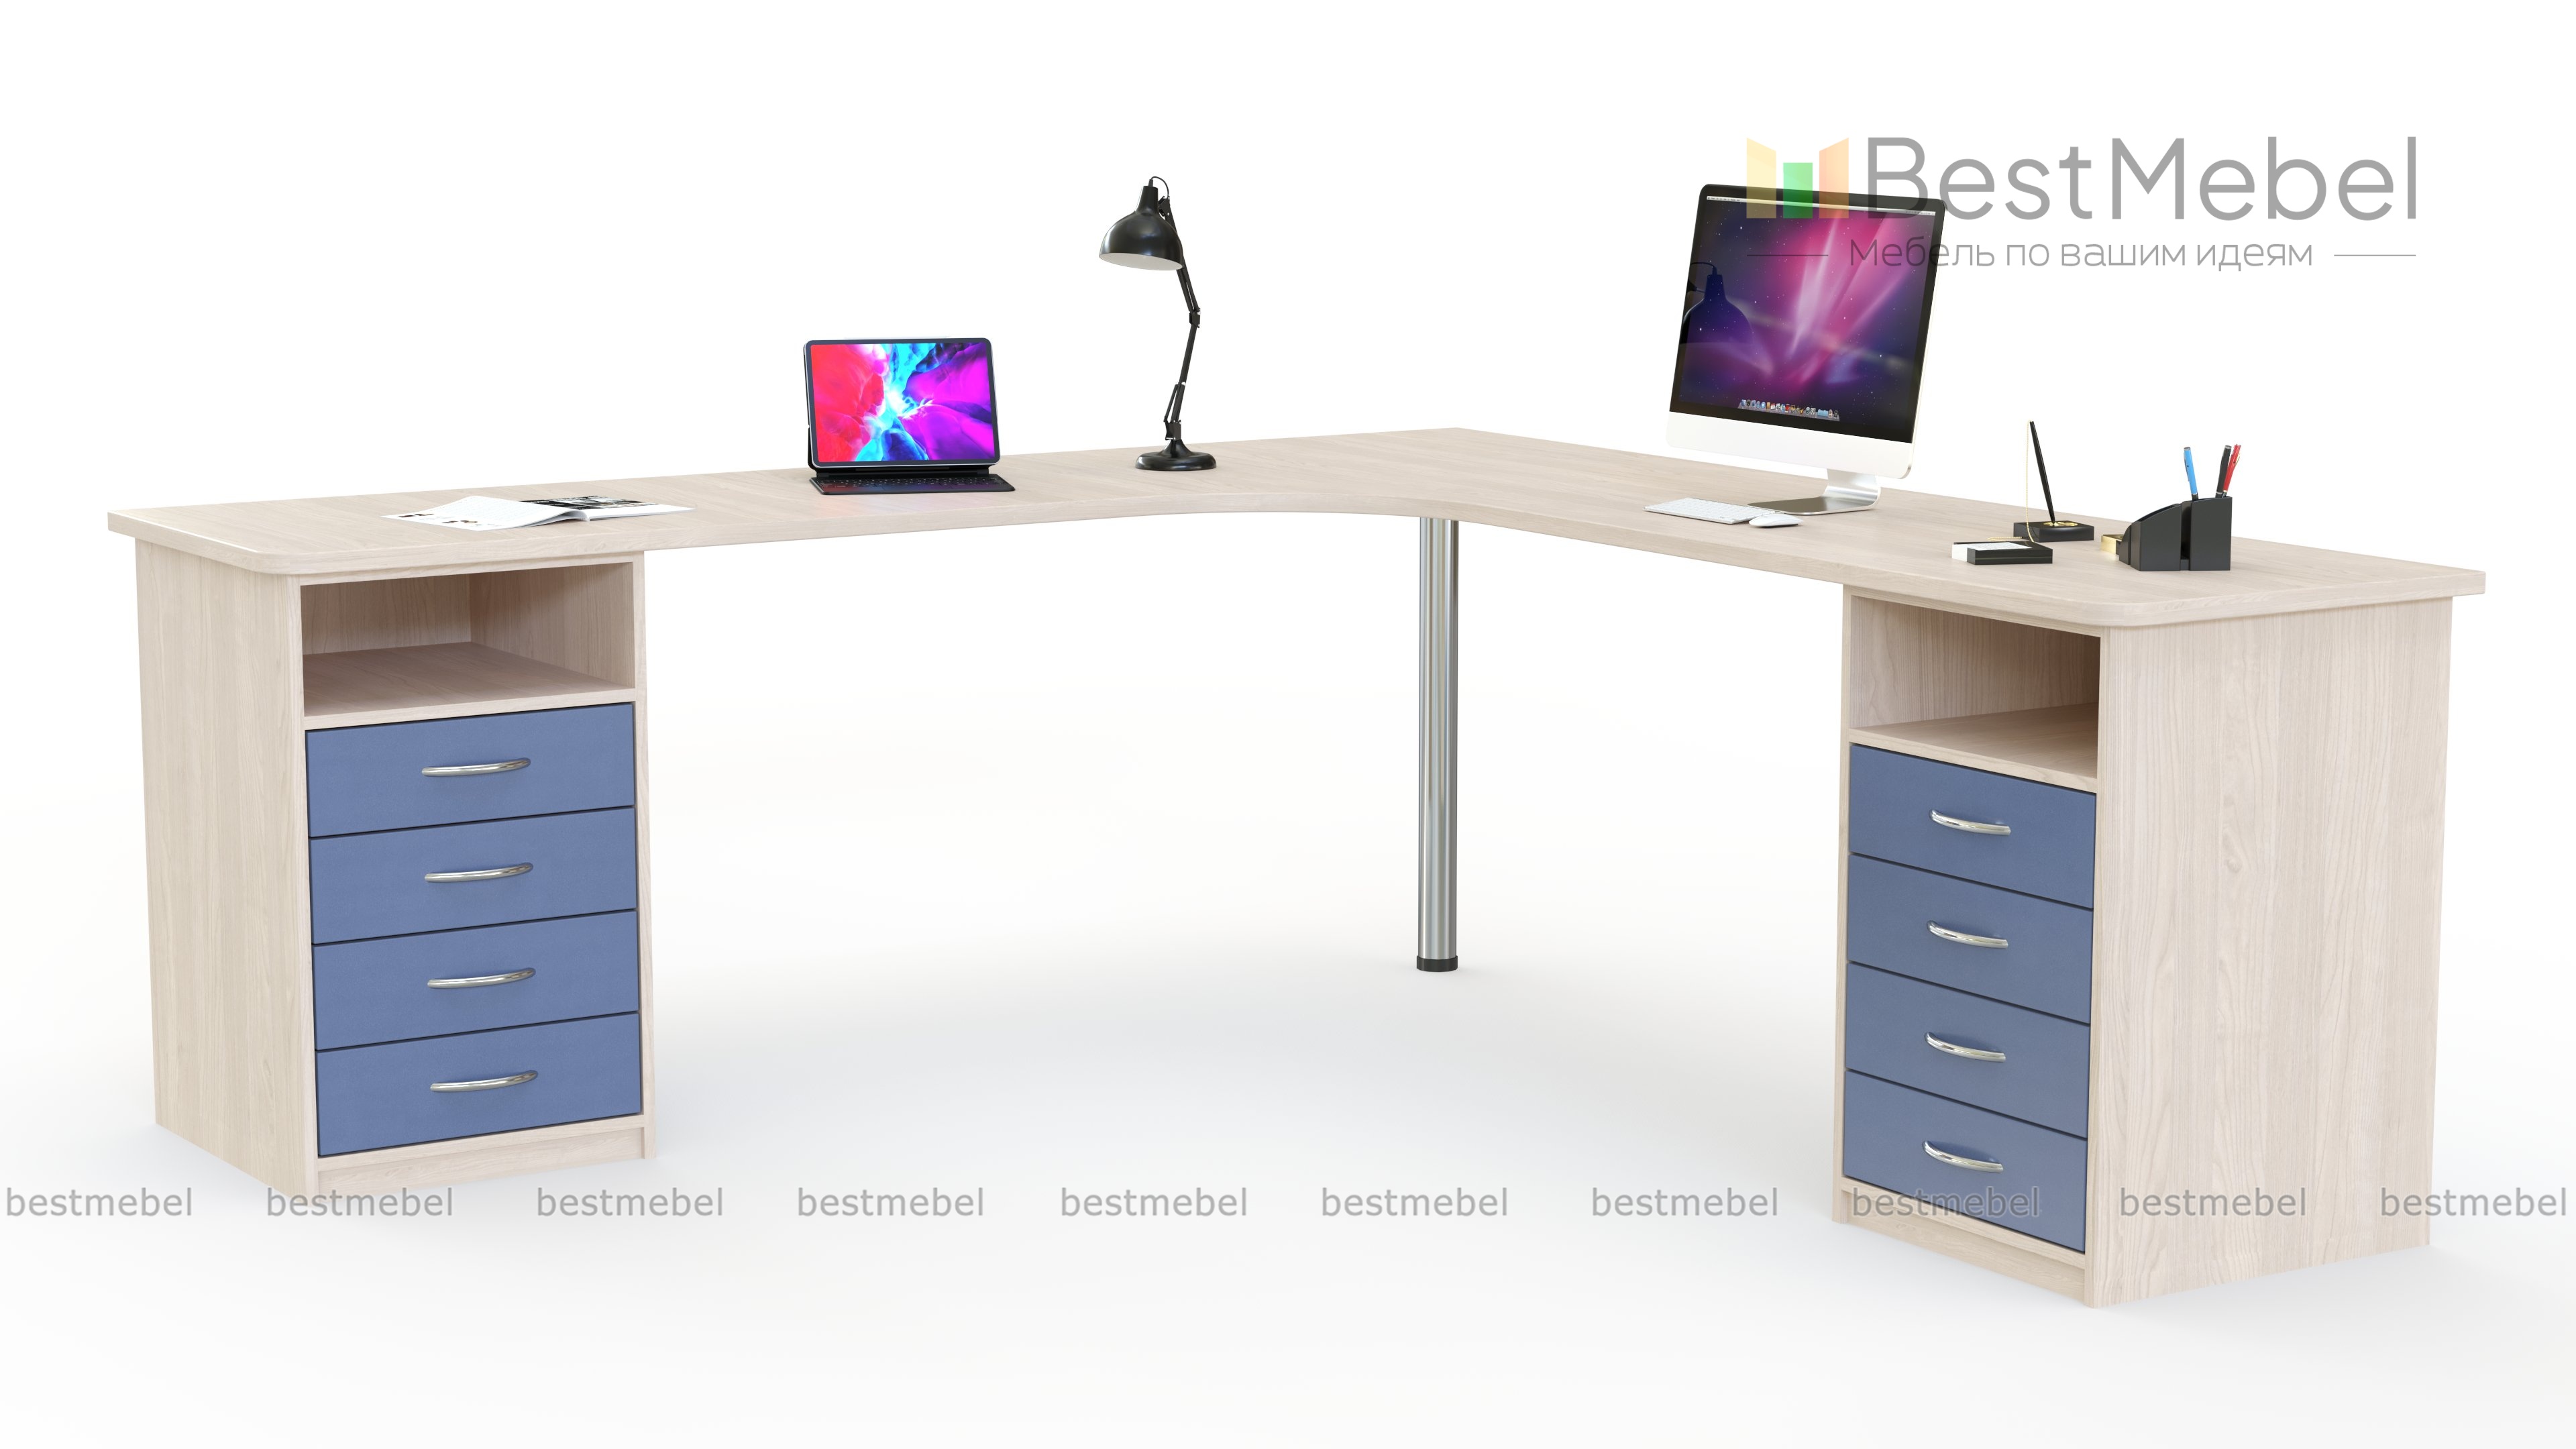 Угловой письменный стол для двоих Нико 80 - 24930 руб, доставим бесплатно в  Челябинске, выбирайте размер и цвет